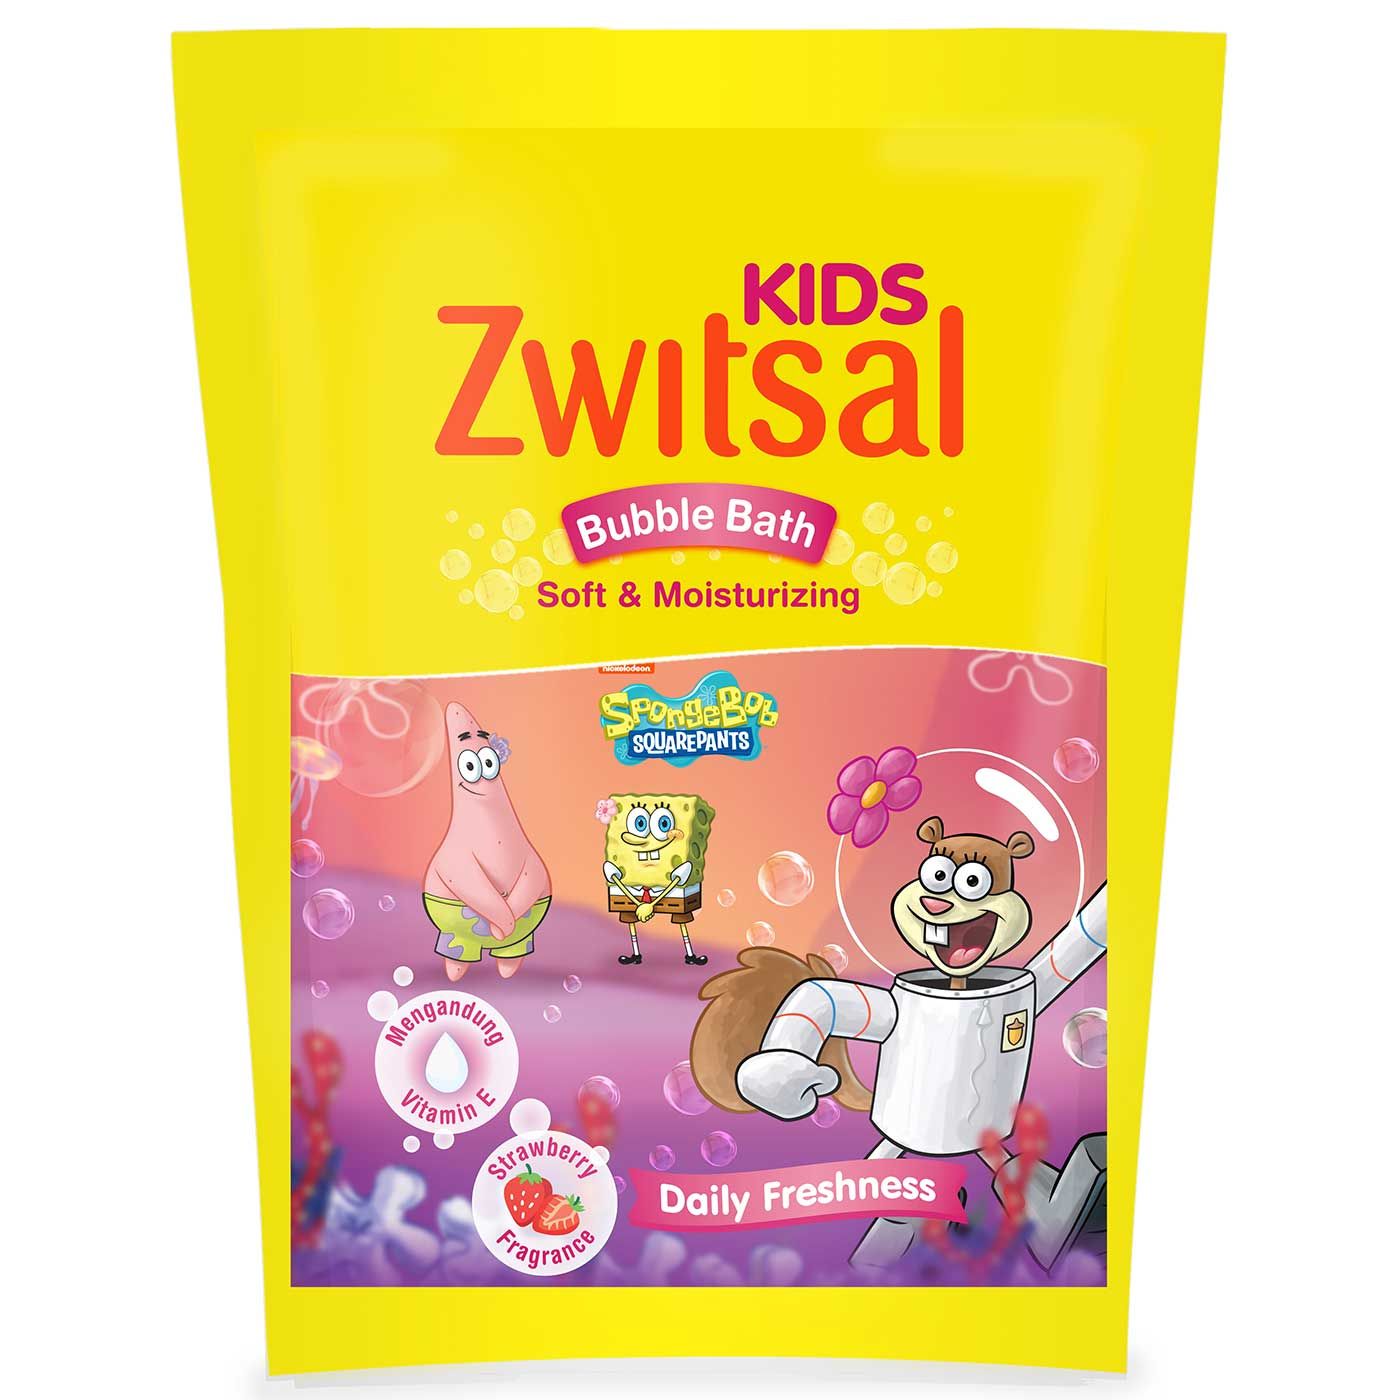 Zwitsal Kids Bubble Bath Pink Soft & Moisturizing 250ml - 3